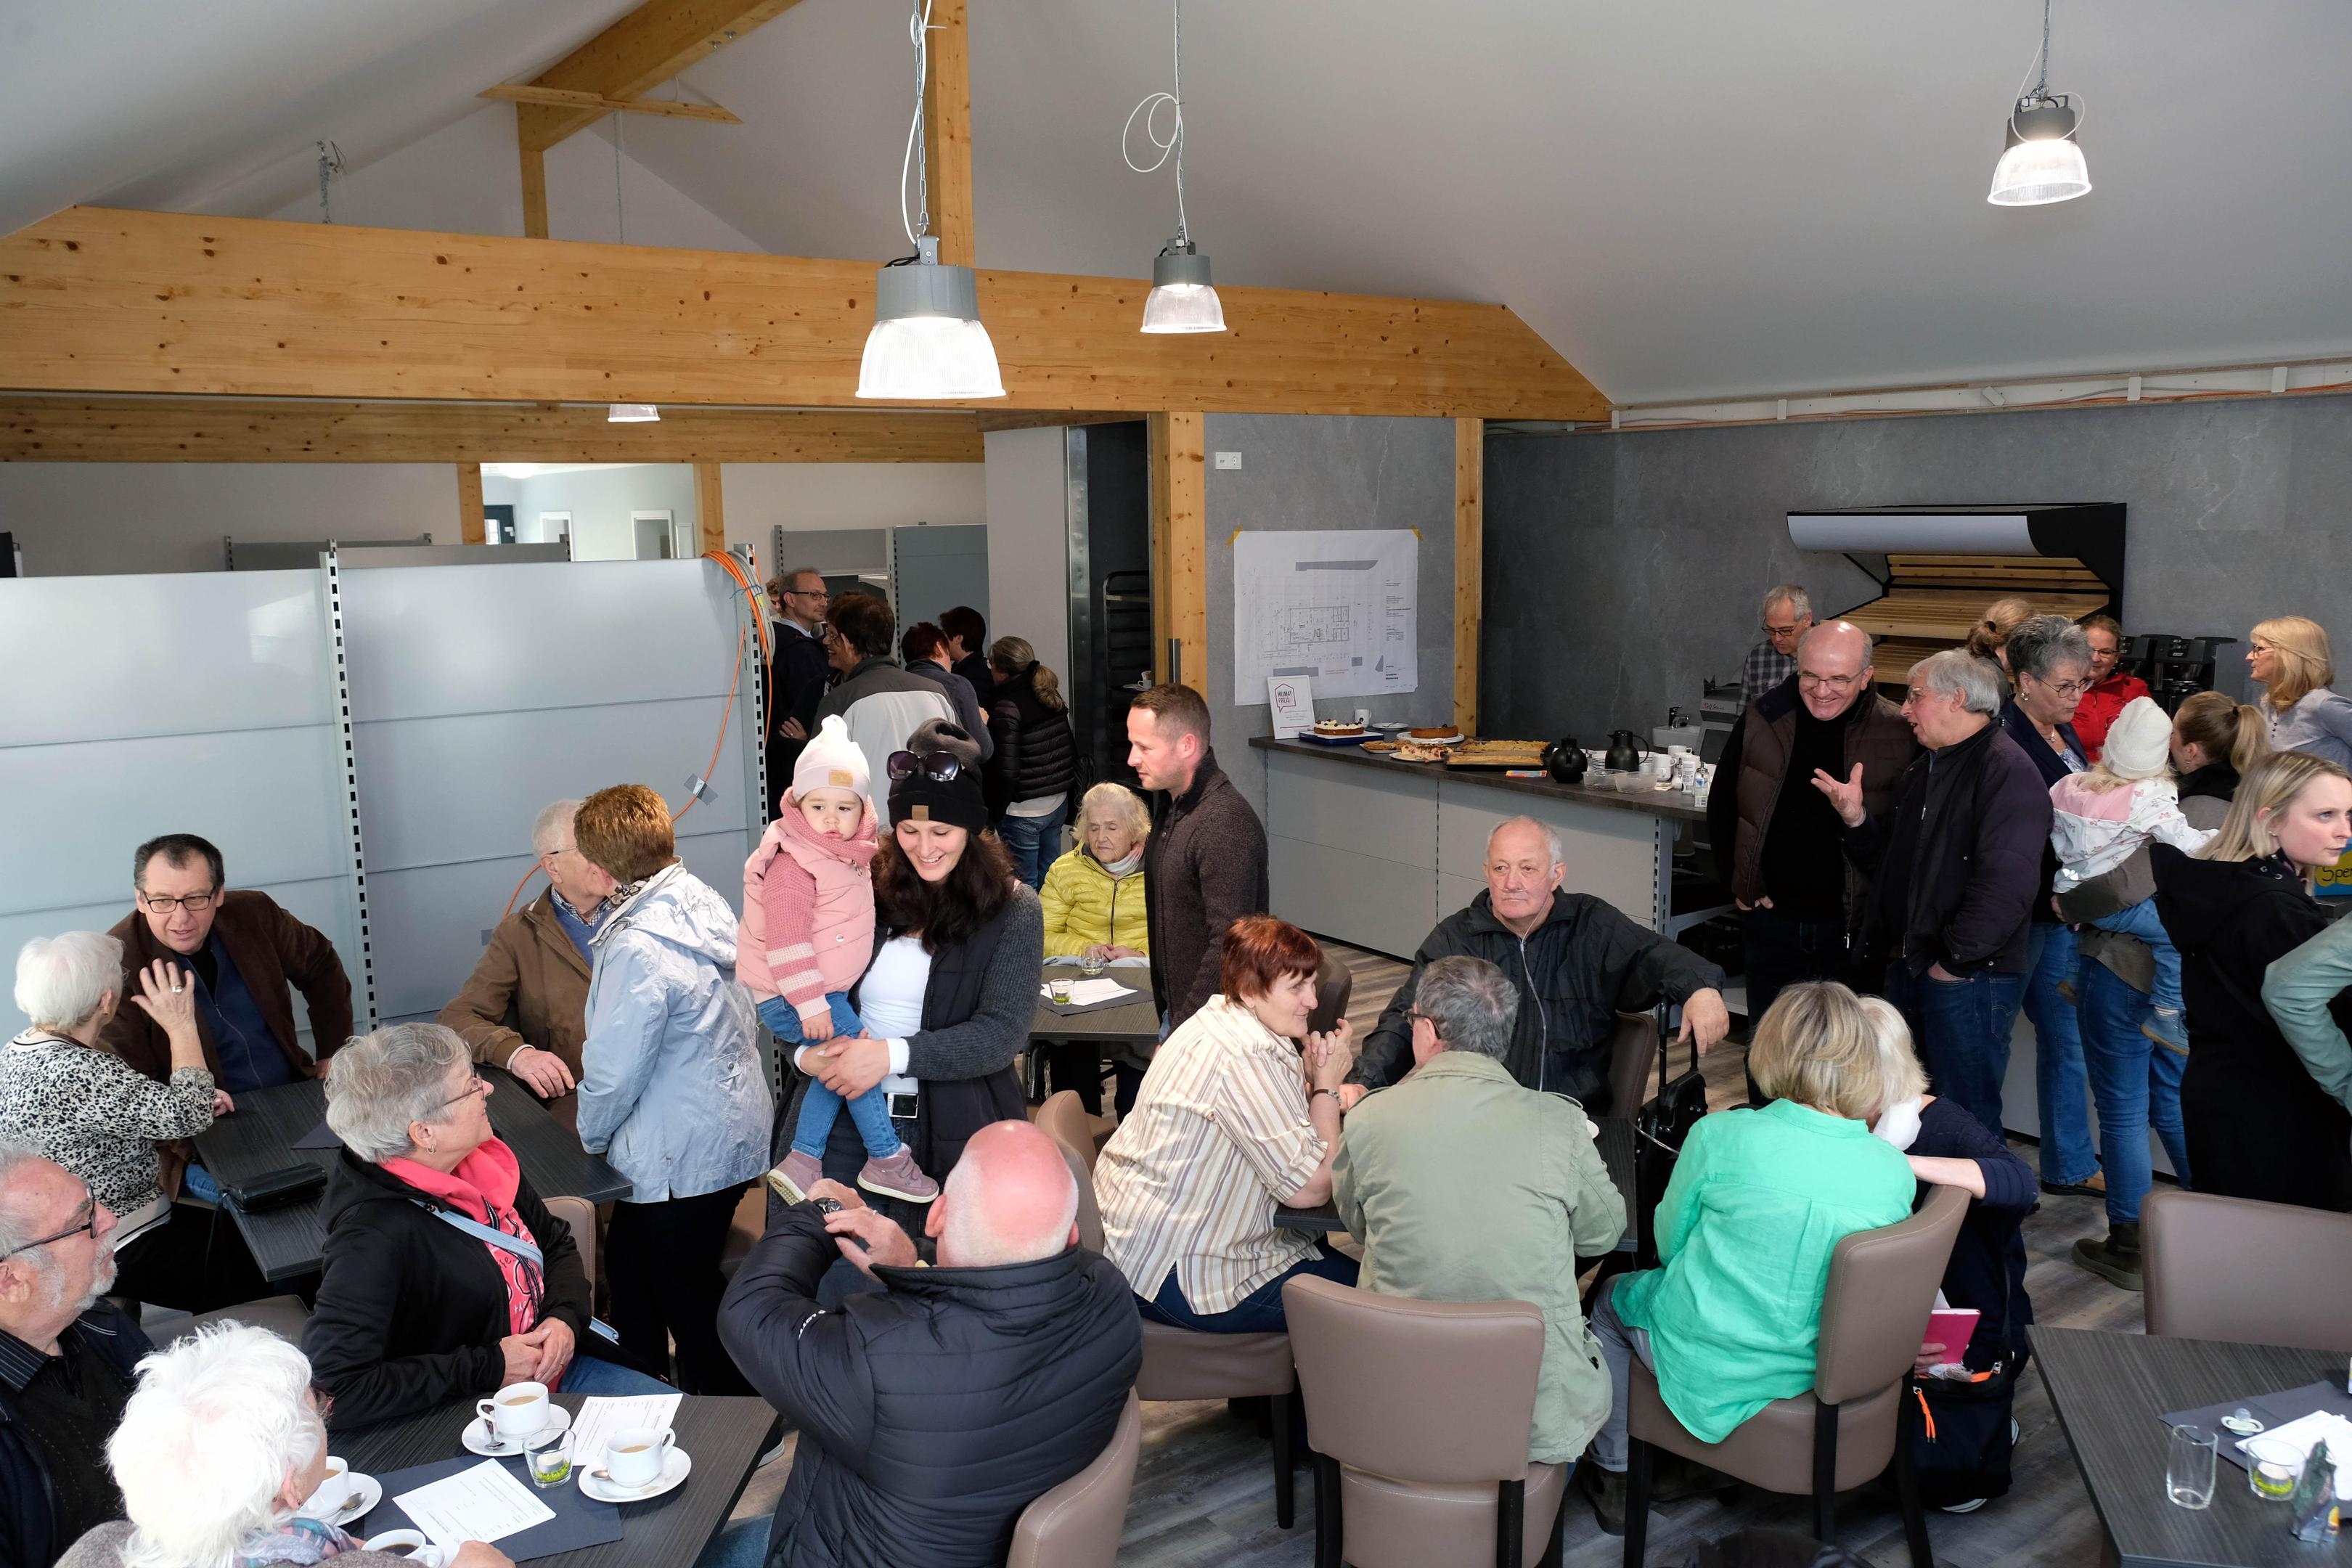 Der neue Dorfladen in Rollesbroich kommt an: Beim Tag der offenen Tür, fünf Wochen vor der offiziellen Eröffnung, war das Interesse der Bevölkerung bereits riesig.